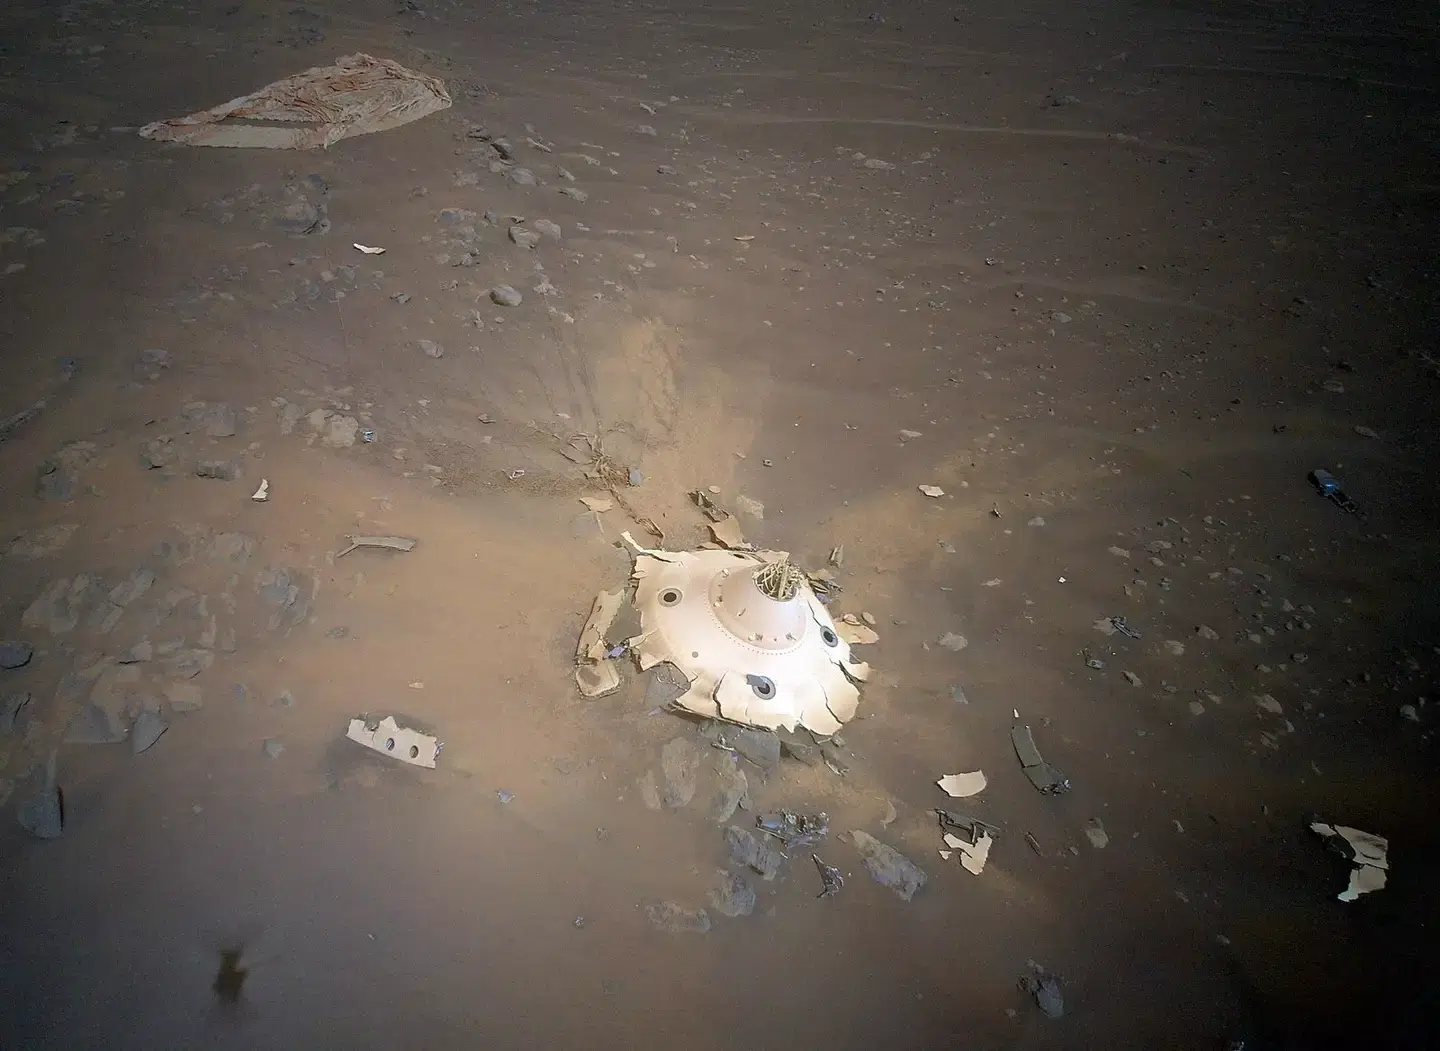 Helicóptero de Marte da NASA encontra destroços estranhos na superfície do planeta